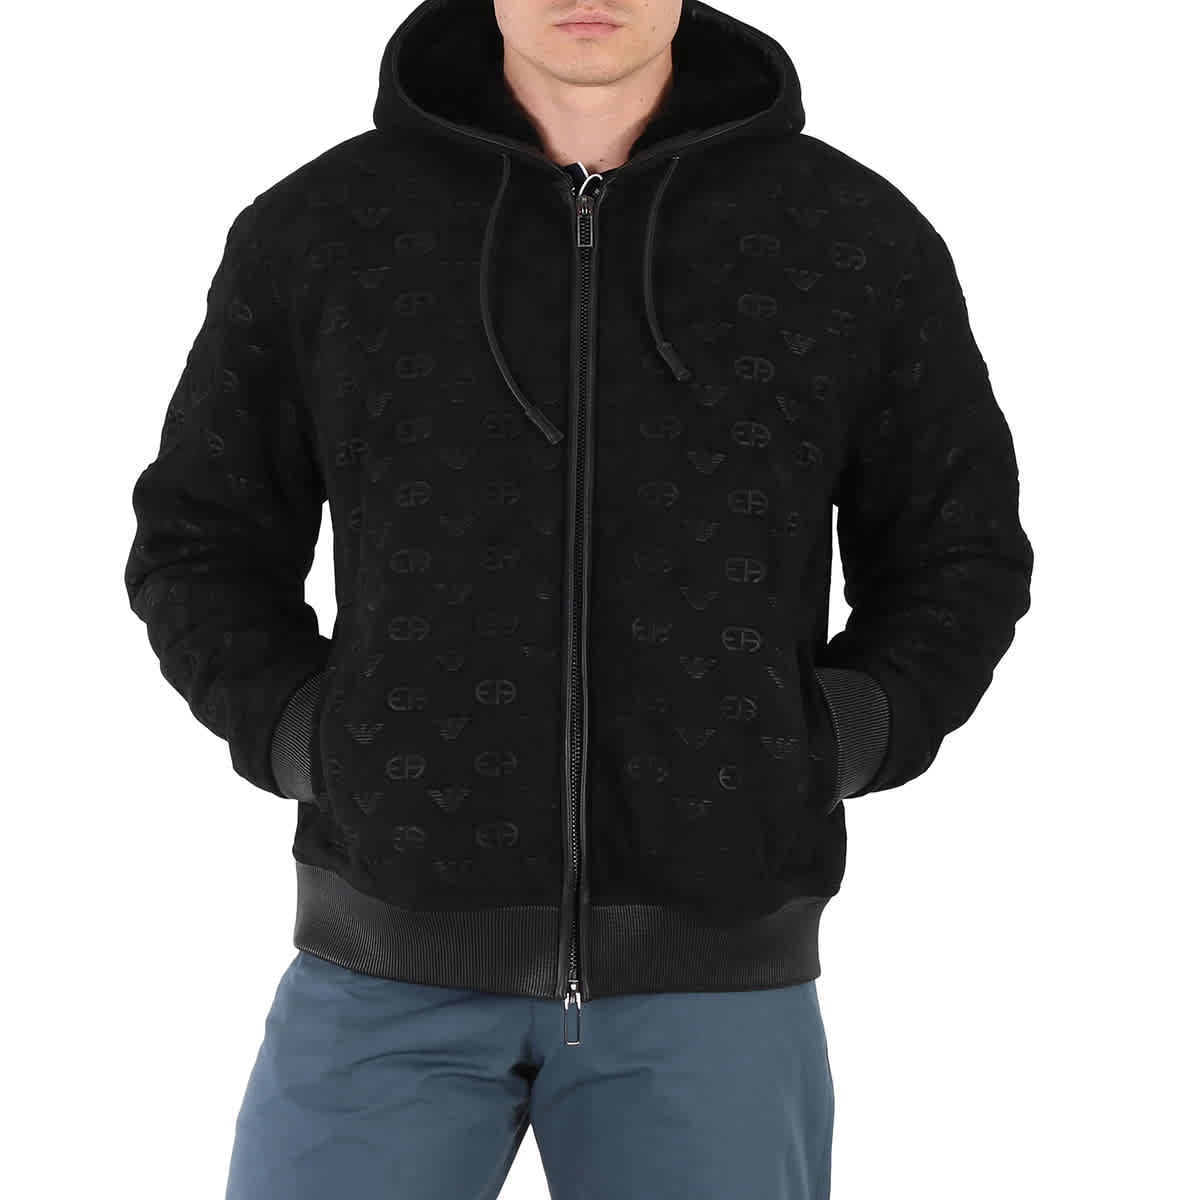 Emporio Armani Men's Black Logo-Embroidered Blouson Jacket, Brand Size 54  (US Size 44)